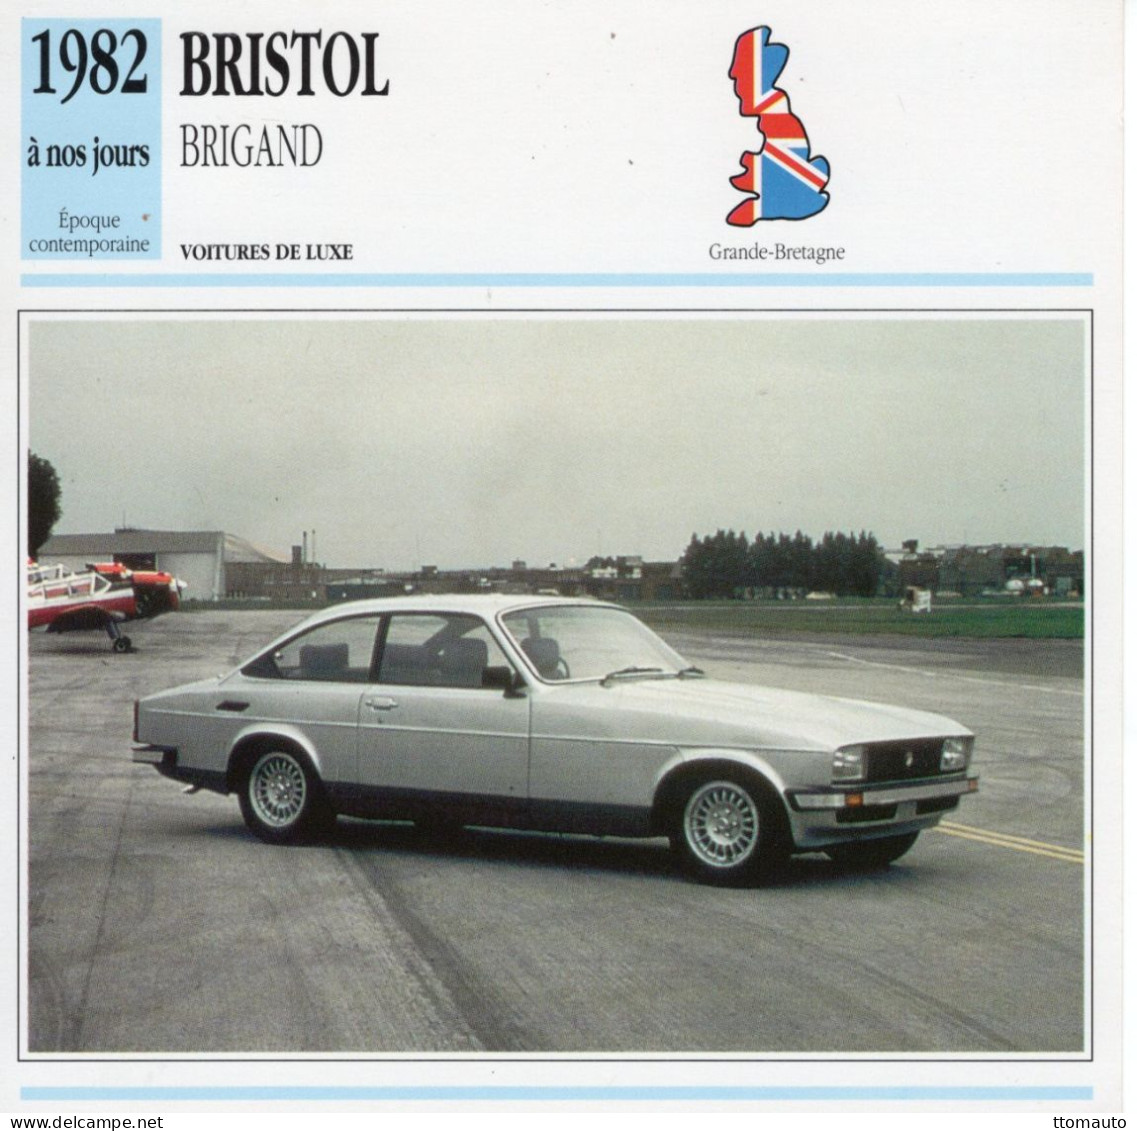 Bristol Brigand  -  1982  - Voiture De Luxe -  Fiche Technique Automobile (GB) - Coches